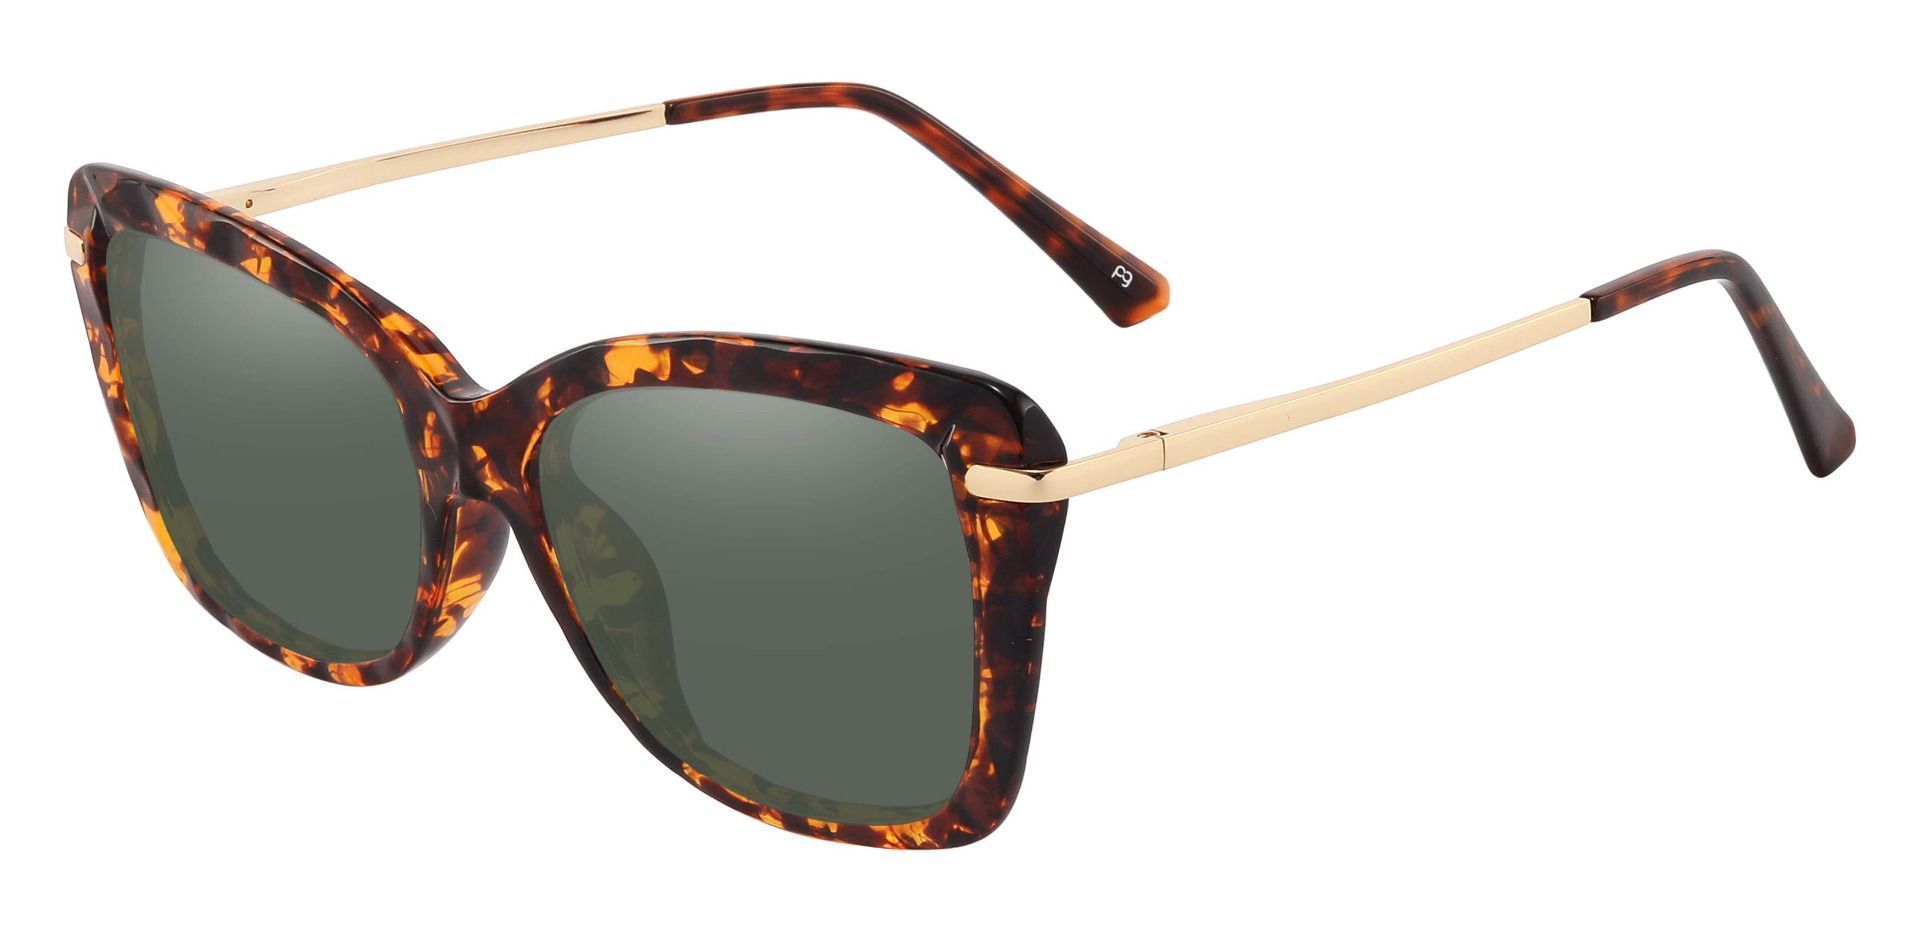 Shoshanna Rectangle Progressive Sunglasses - Tortoise Frame With Green Lenses